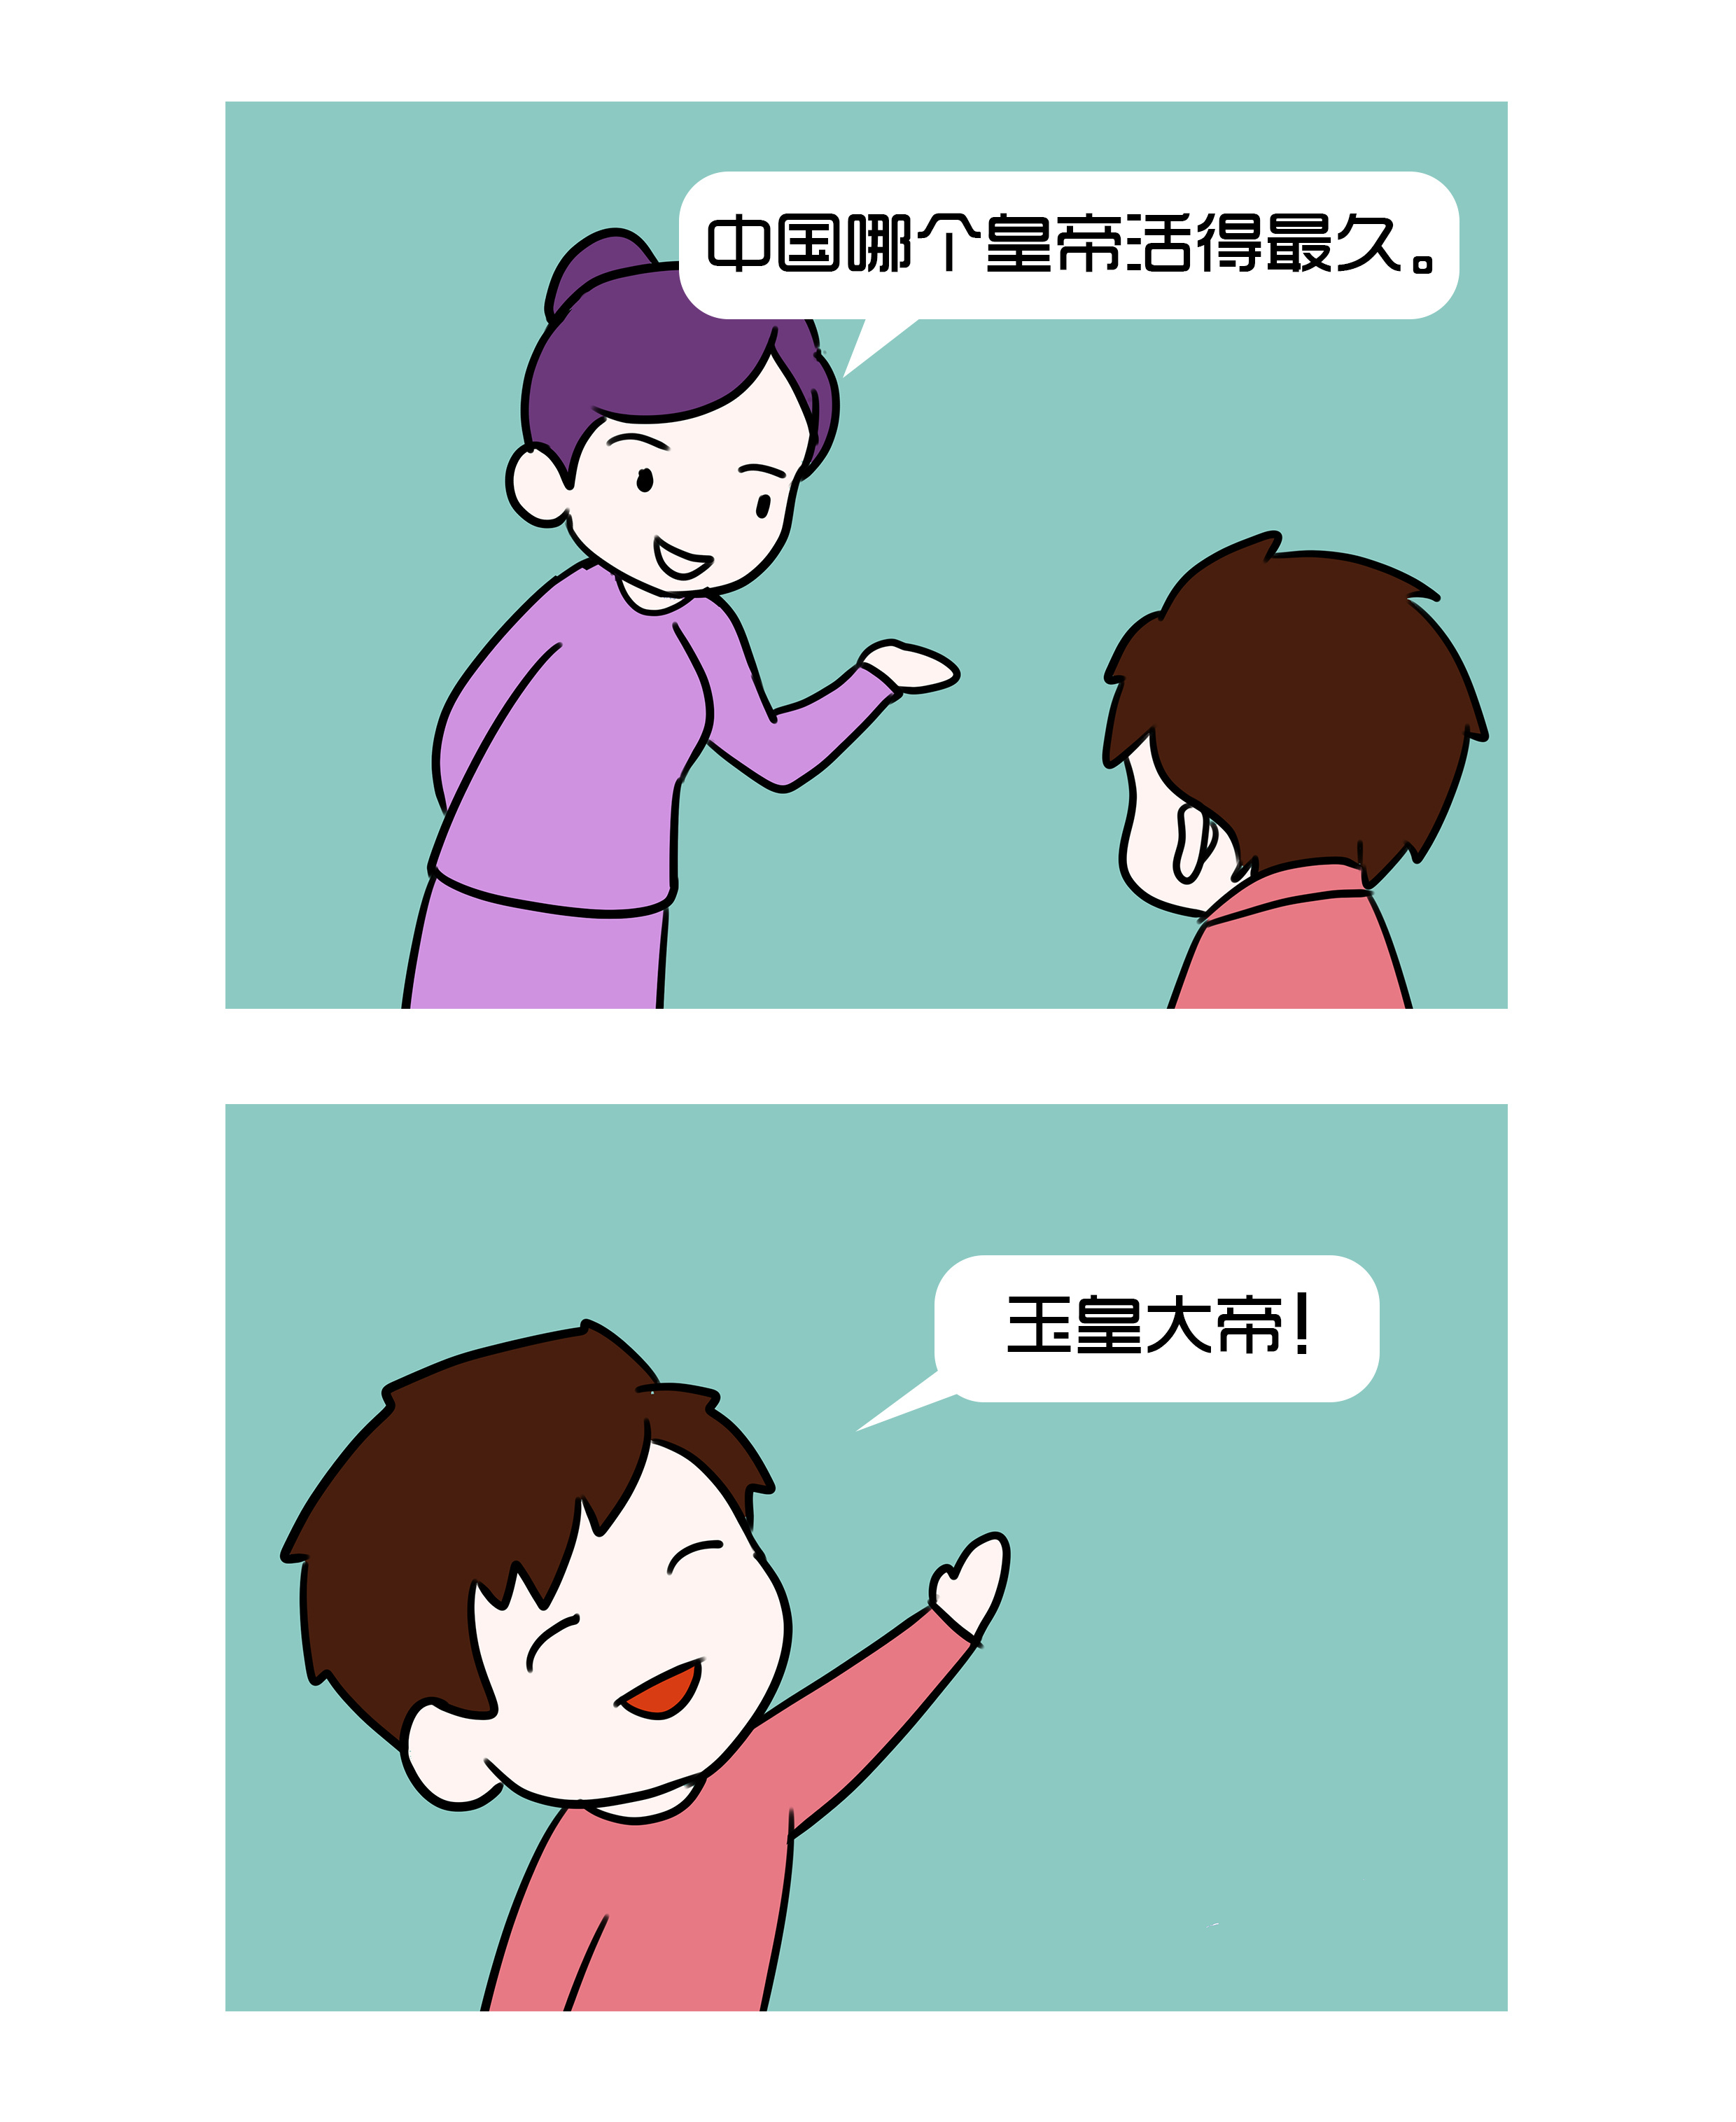 校园笑话小漫画03